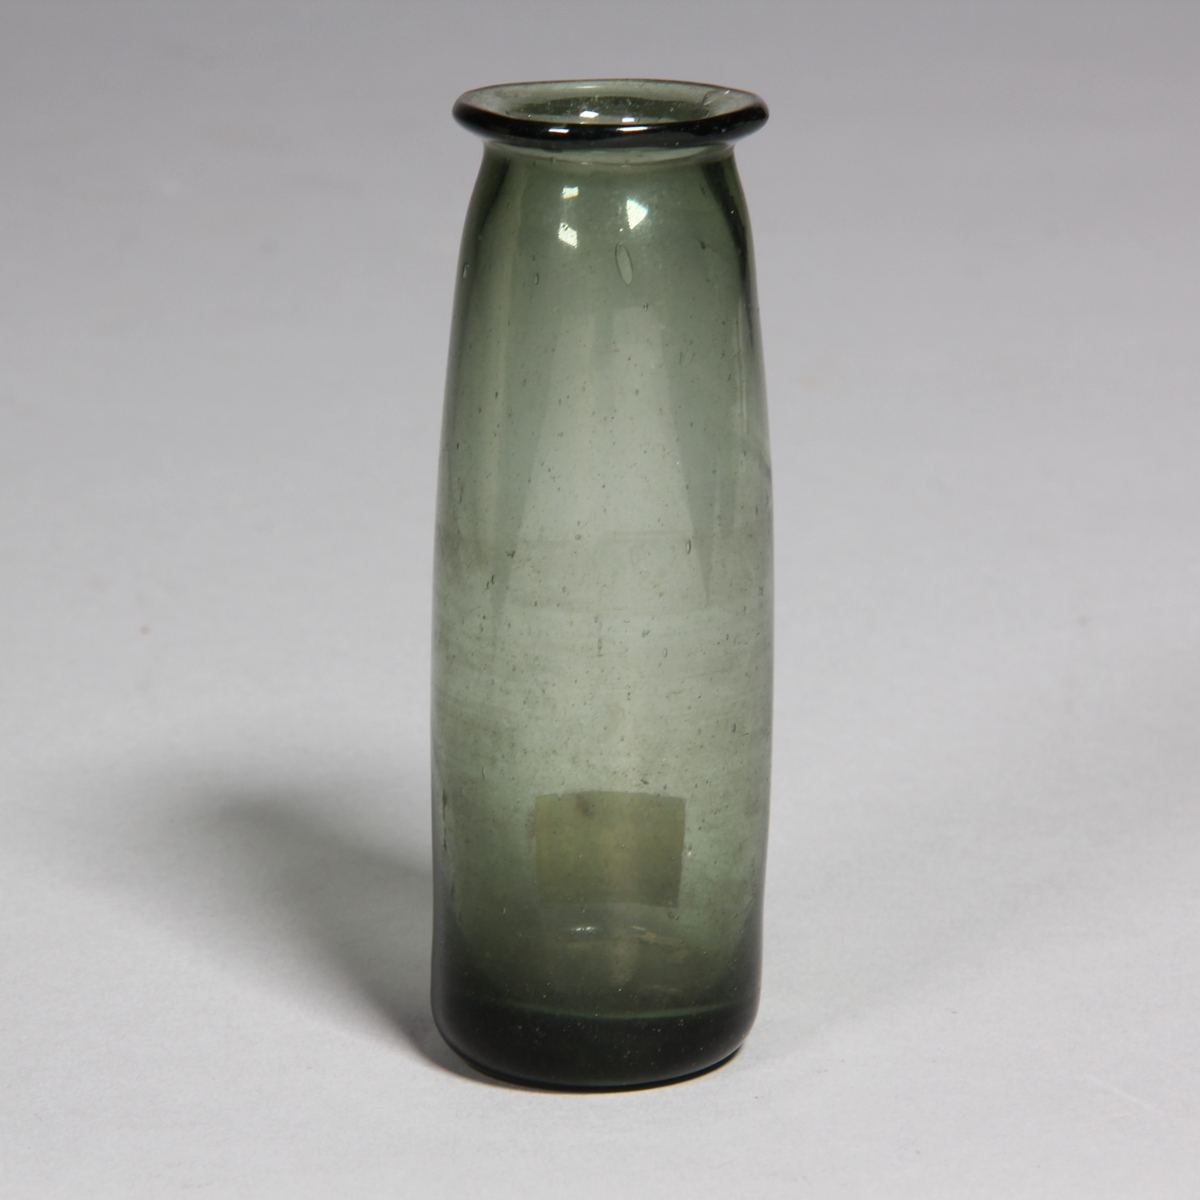 Burk av grönt glas, cylindrisk med utvikt mynning.